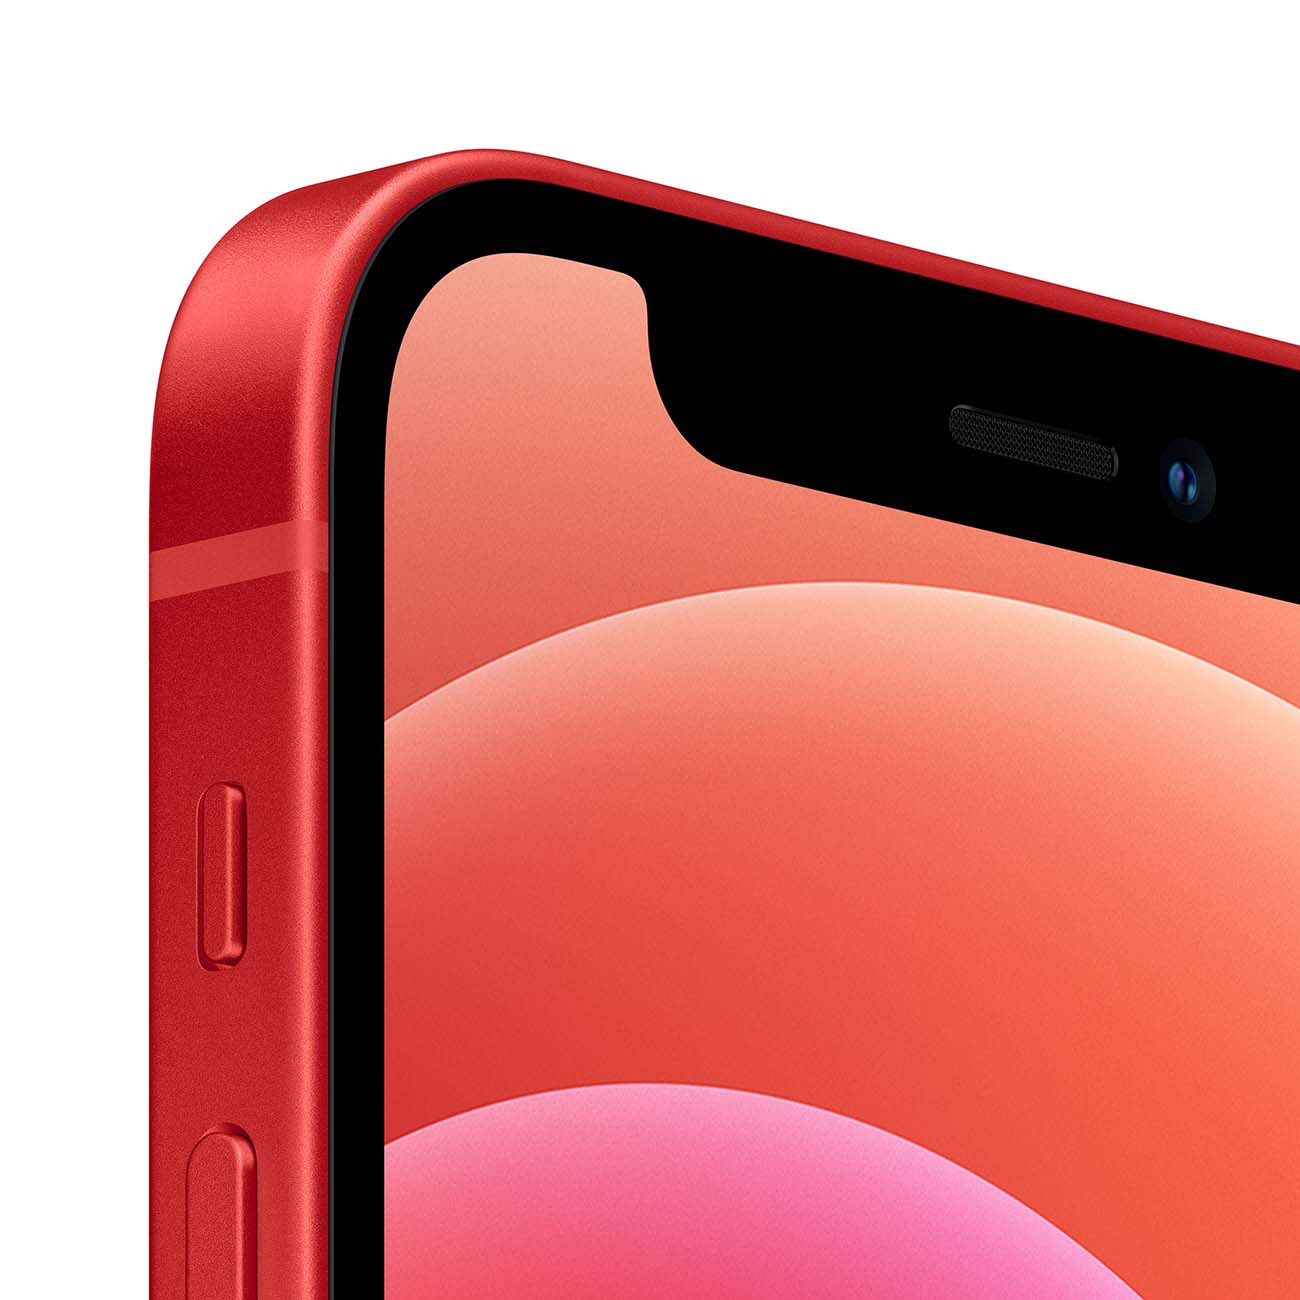 Смартфон Apple iPhone 12 128GB (PRODUCT)Red - купить смартфон Эпл iPhone 12  128GB (PRODUCT)Red, цены в интернет-магазине Эльдорадо в Москве, доставка  по РФ